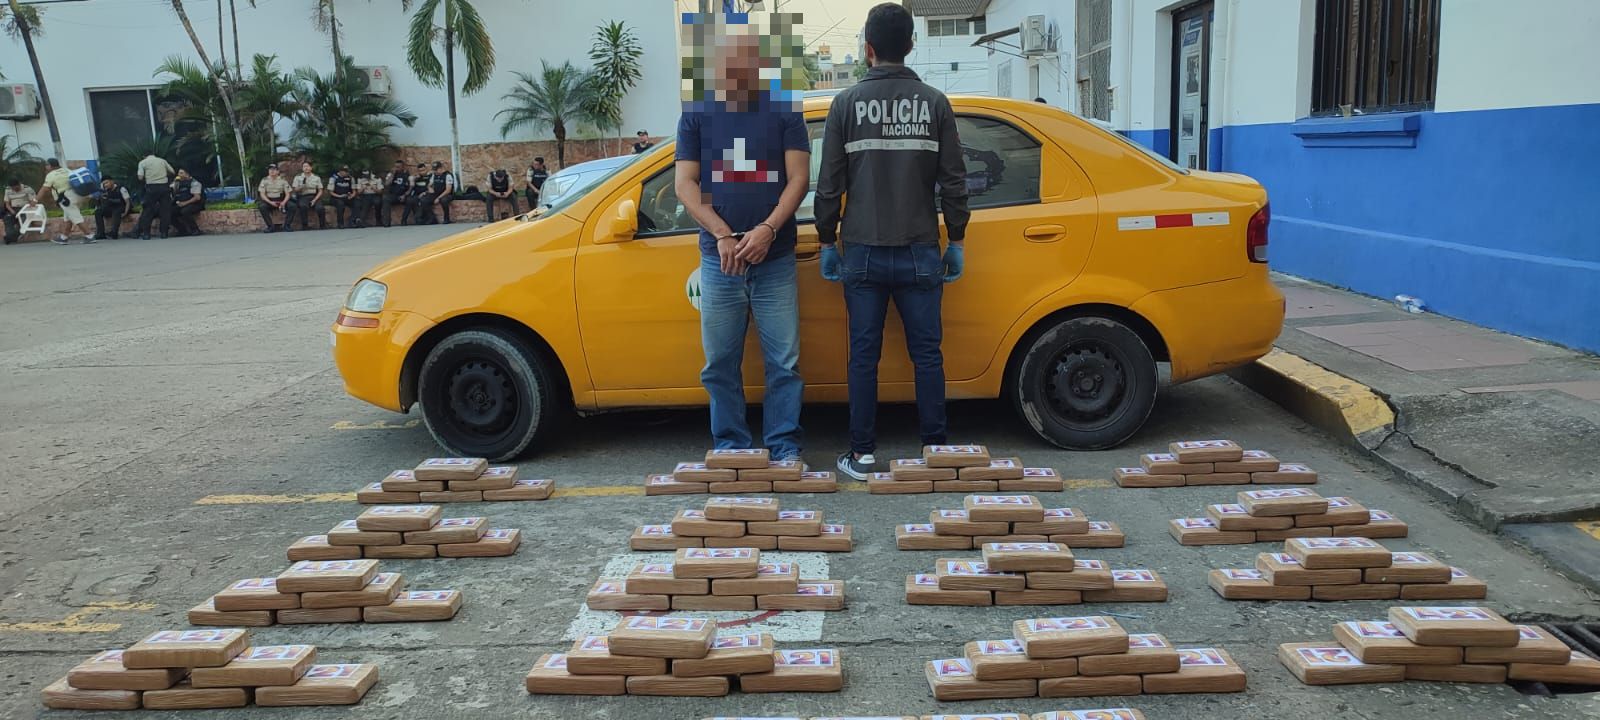 En el taxi fueron hallados 100 paquetes que contenían droga. Foto: Policía Nacional